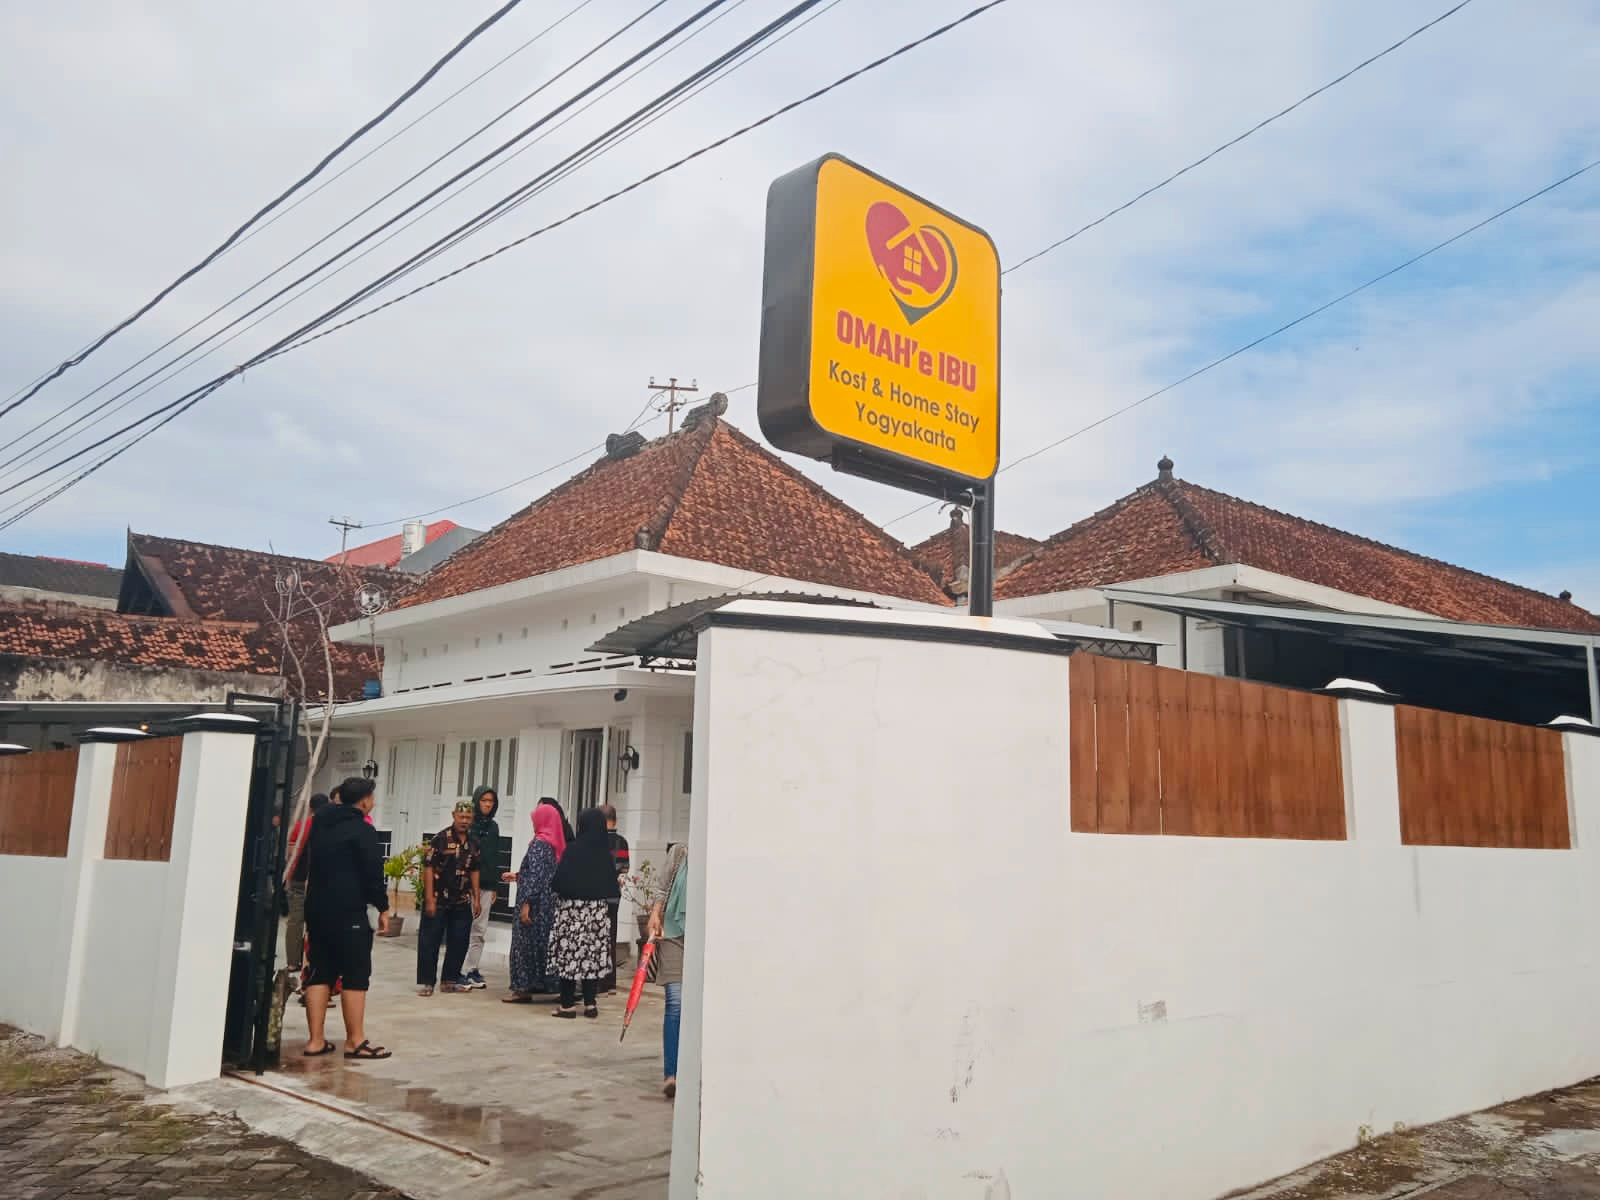 Omah'e Ibu Homestay Jogja, Yogyakarta